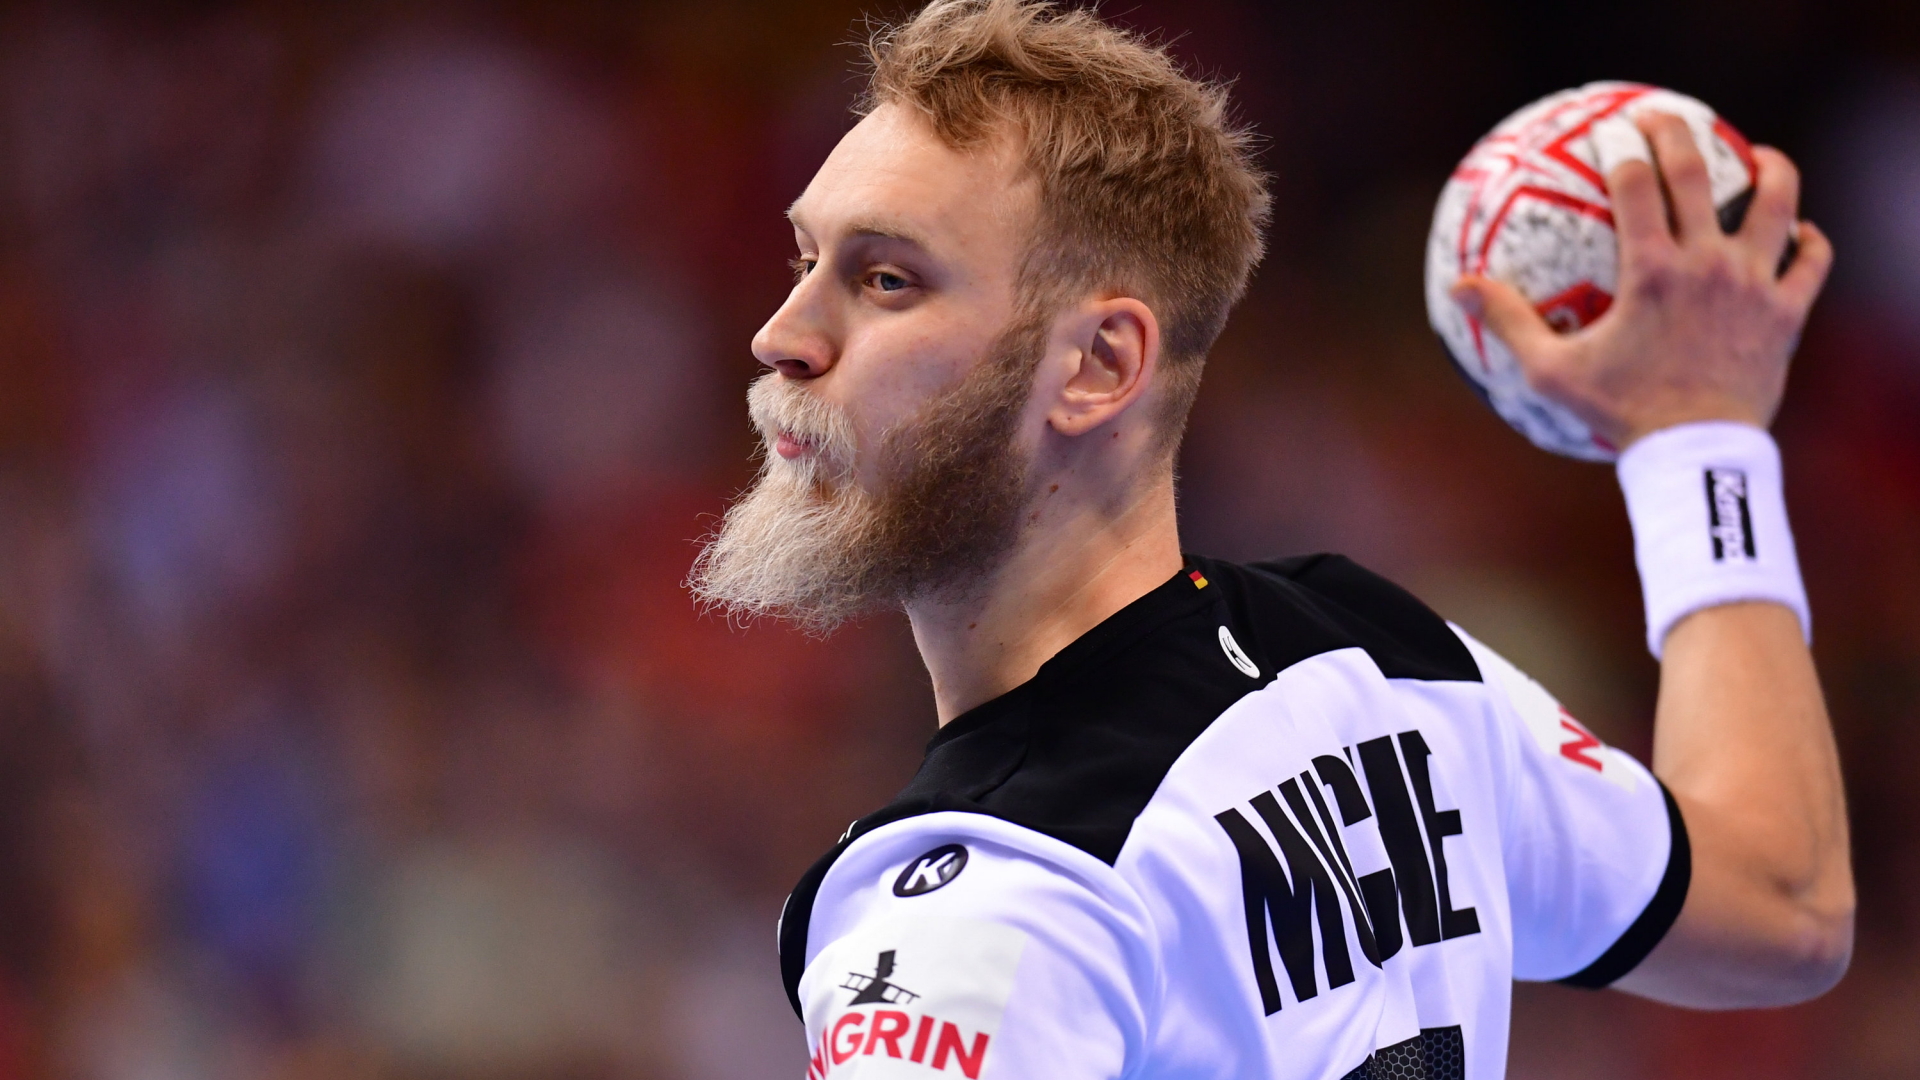 Der deutsche Handball-Spieler Matthias Musche | Bildquelle: dpa